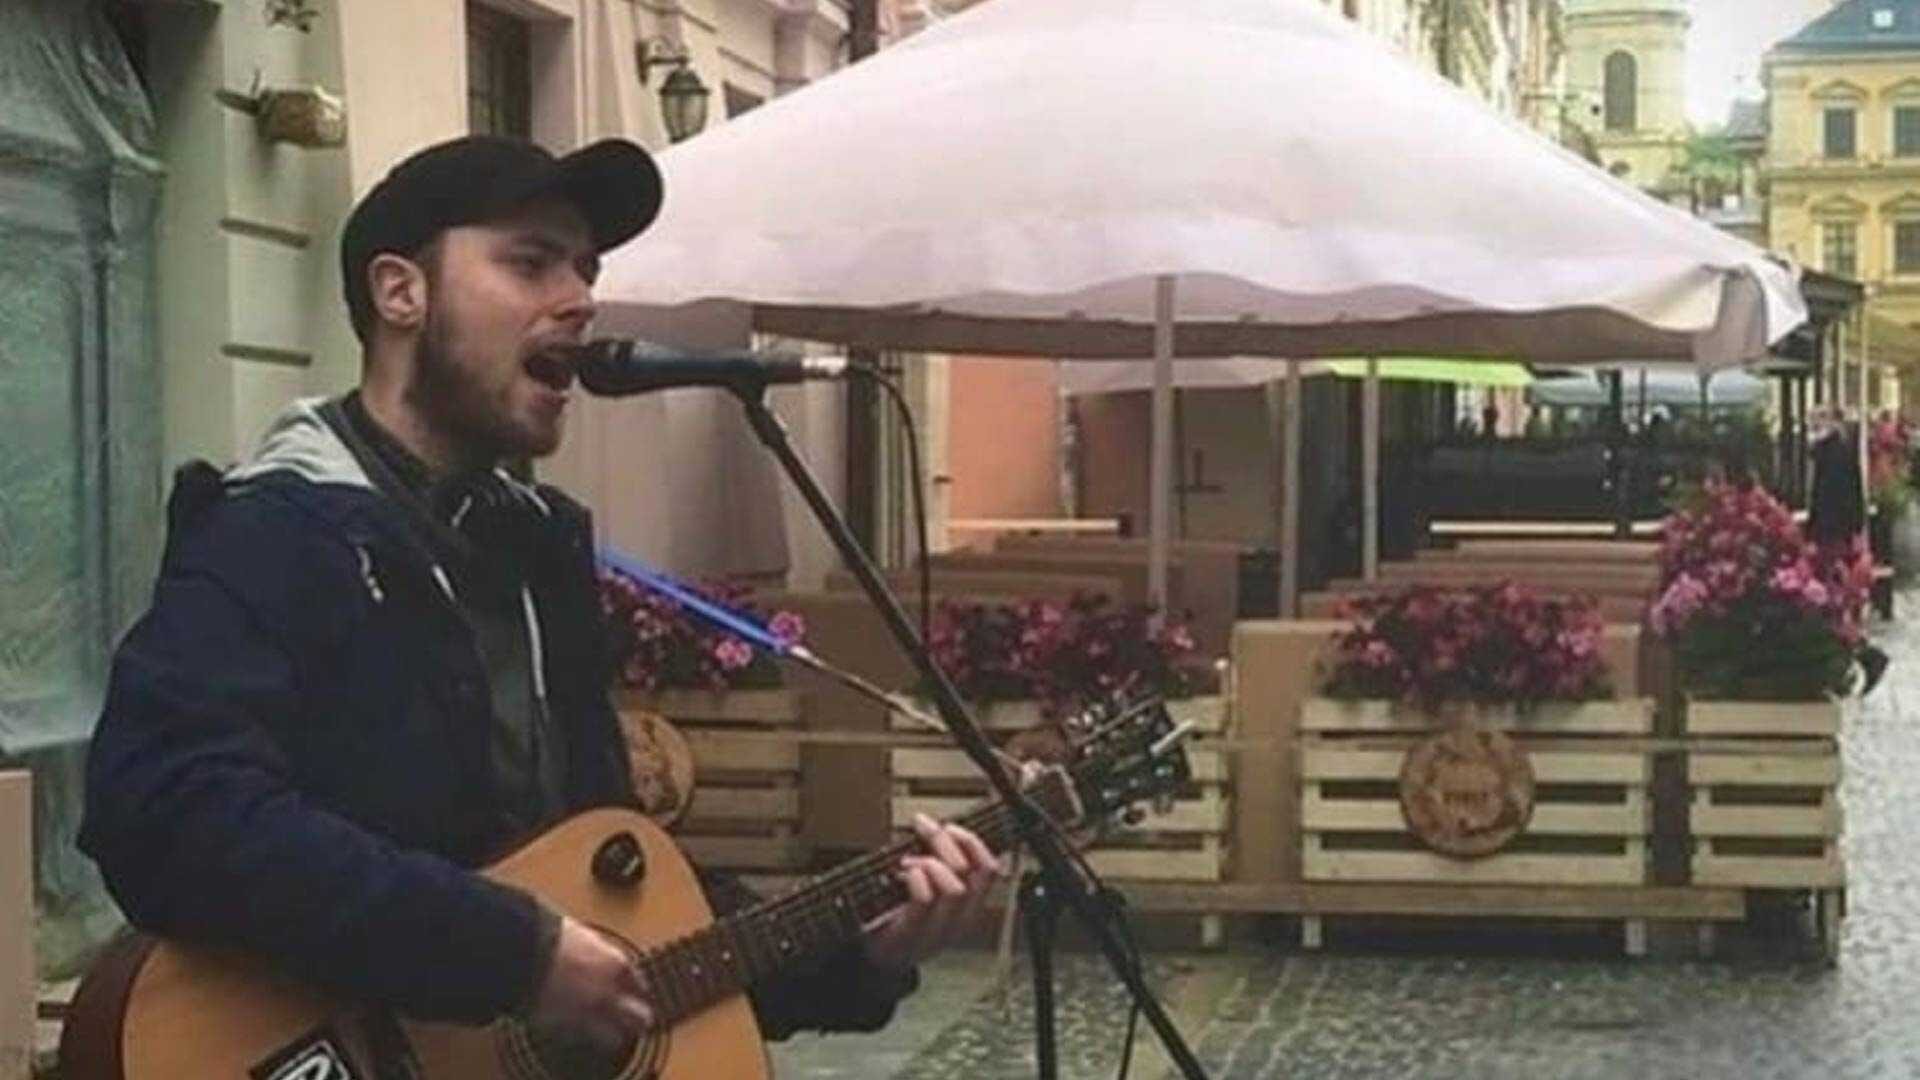 Uliczny artysta pobity za śpiewanie rosyjskiej piosenki na Rynku we Lwowie